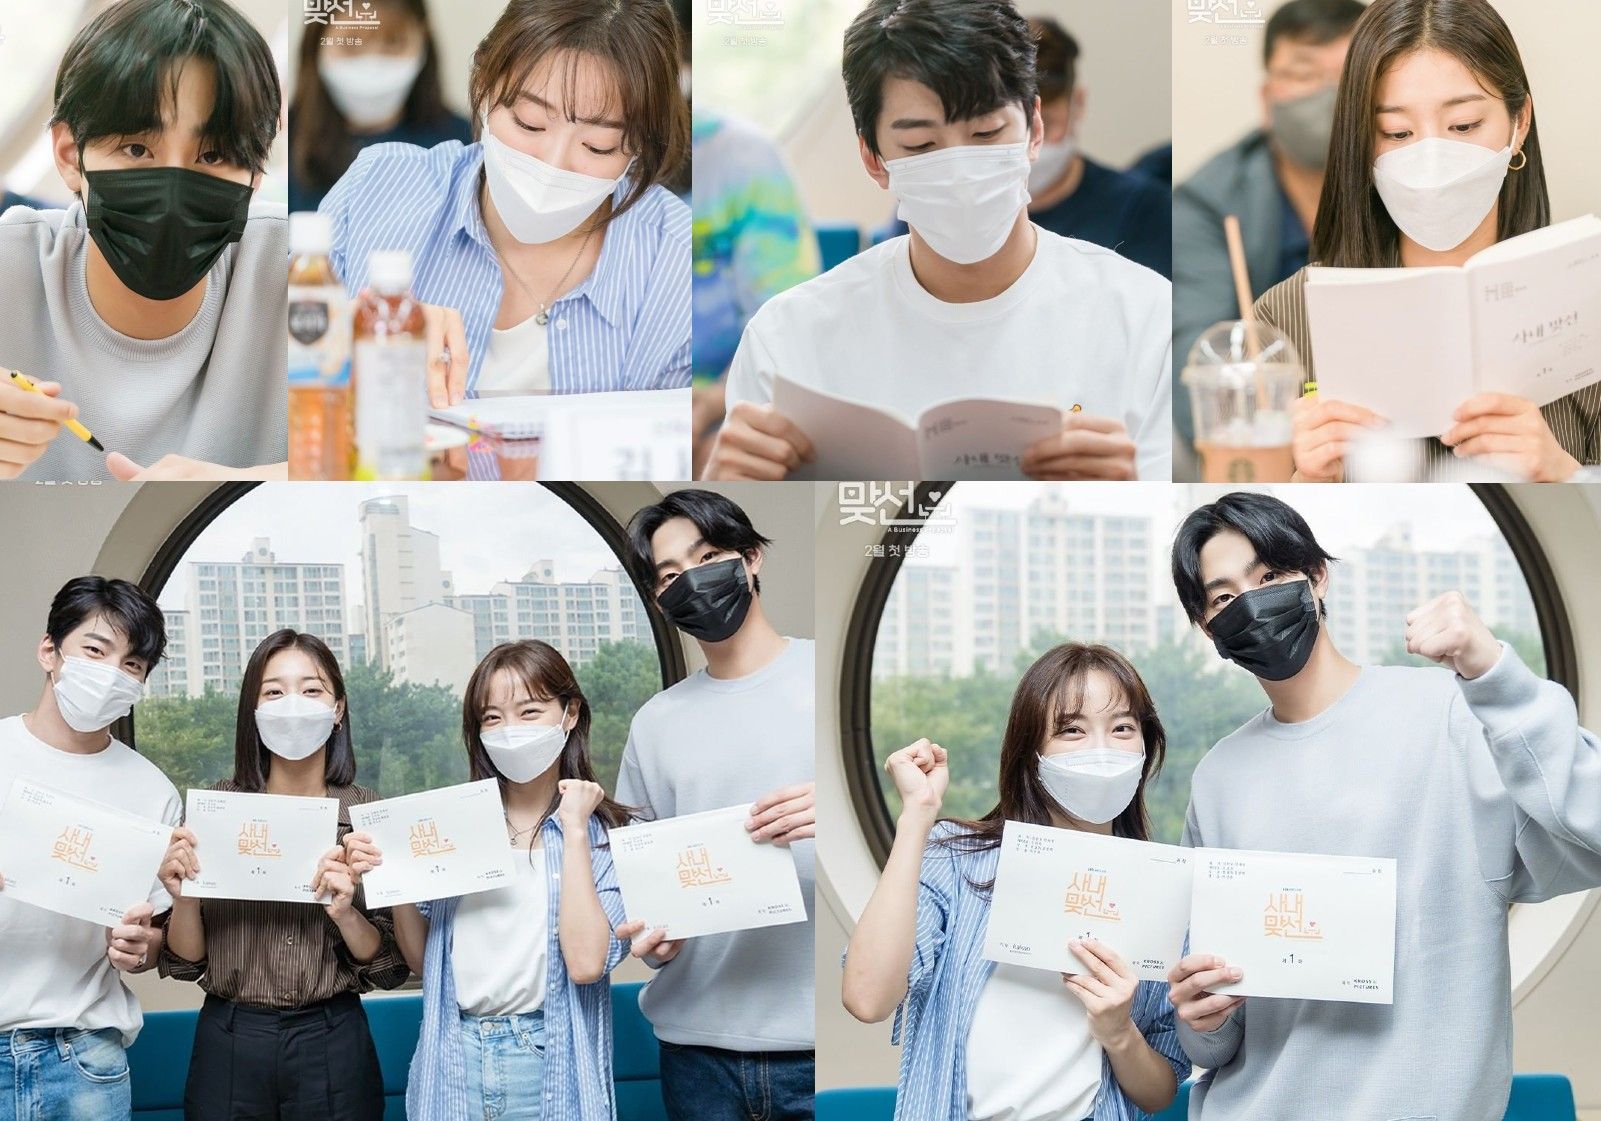 Ahn Hyo Seop, Kim Sejeong, Seol In Ah, dan Kim Min Kyu dalam pembacaan naskah drama A Business Proposal 